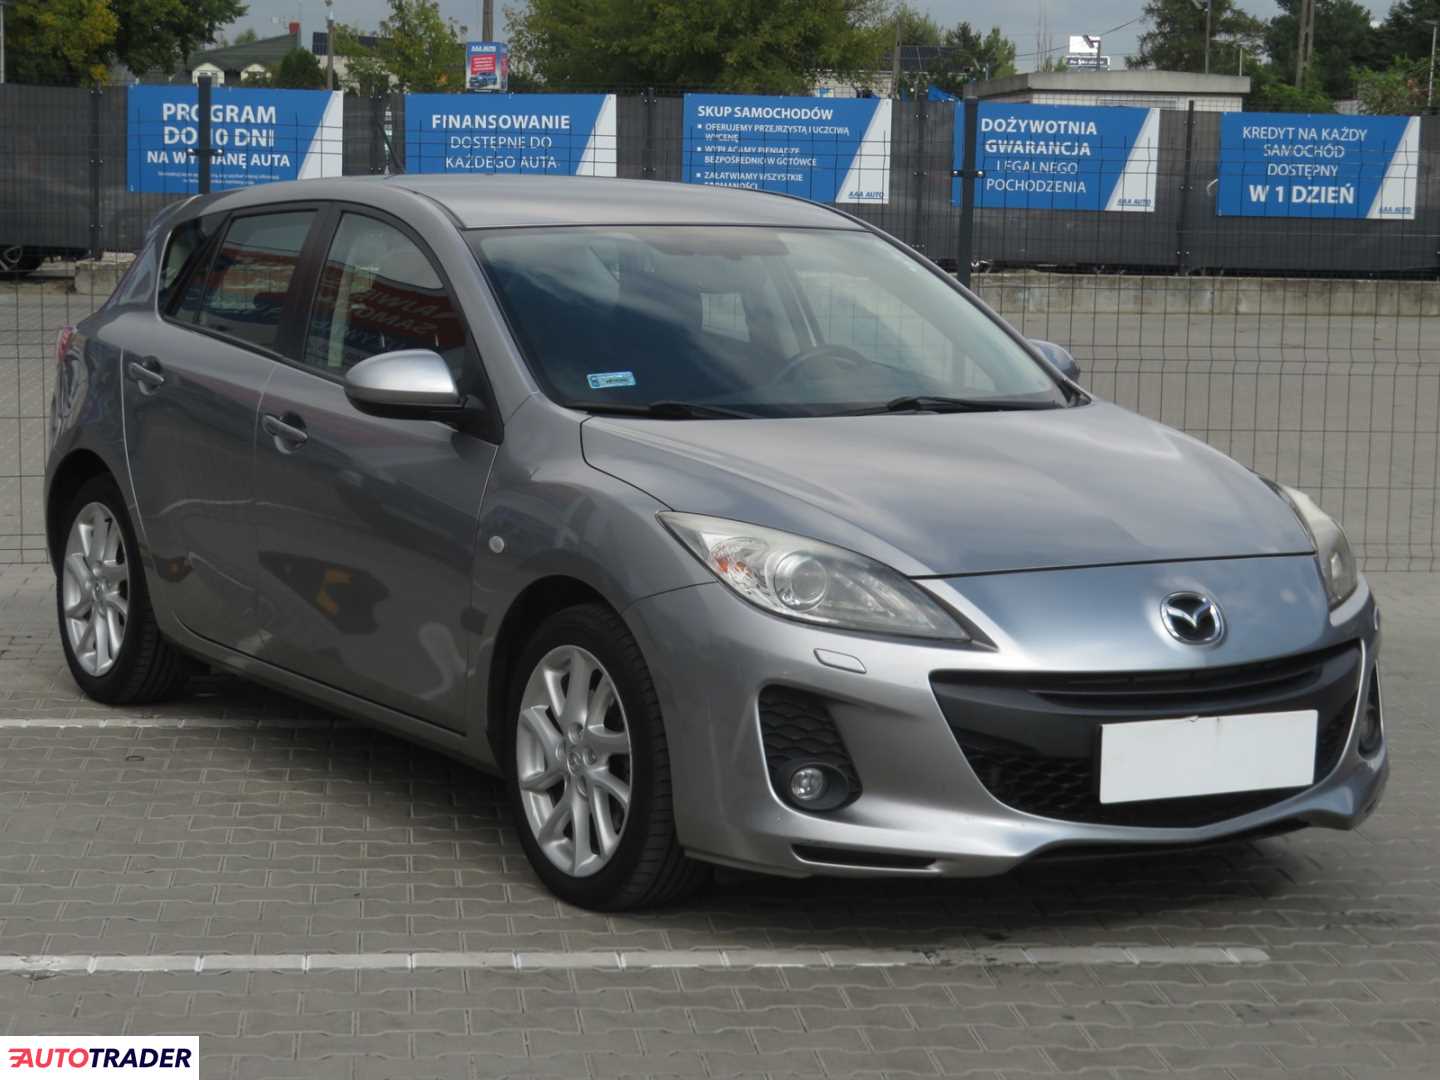 Mazda 3 2012 2.0 147 KM